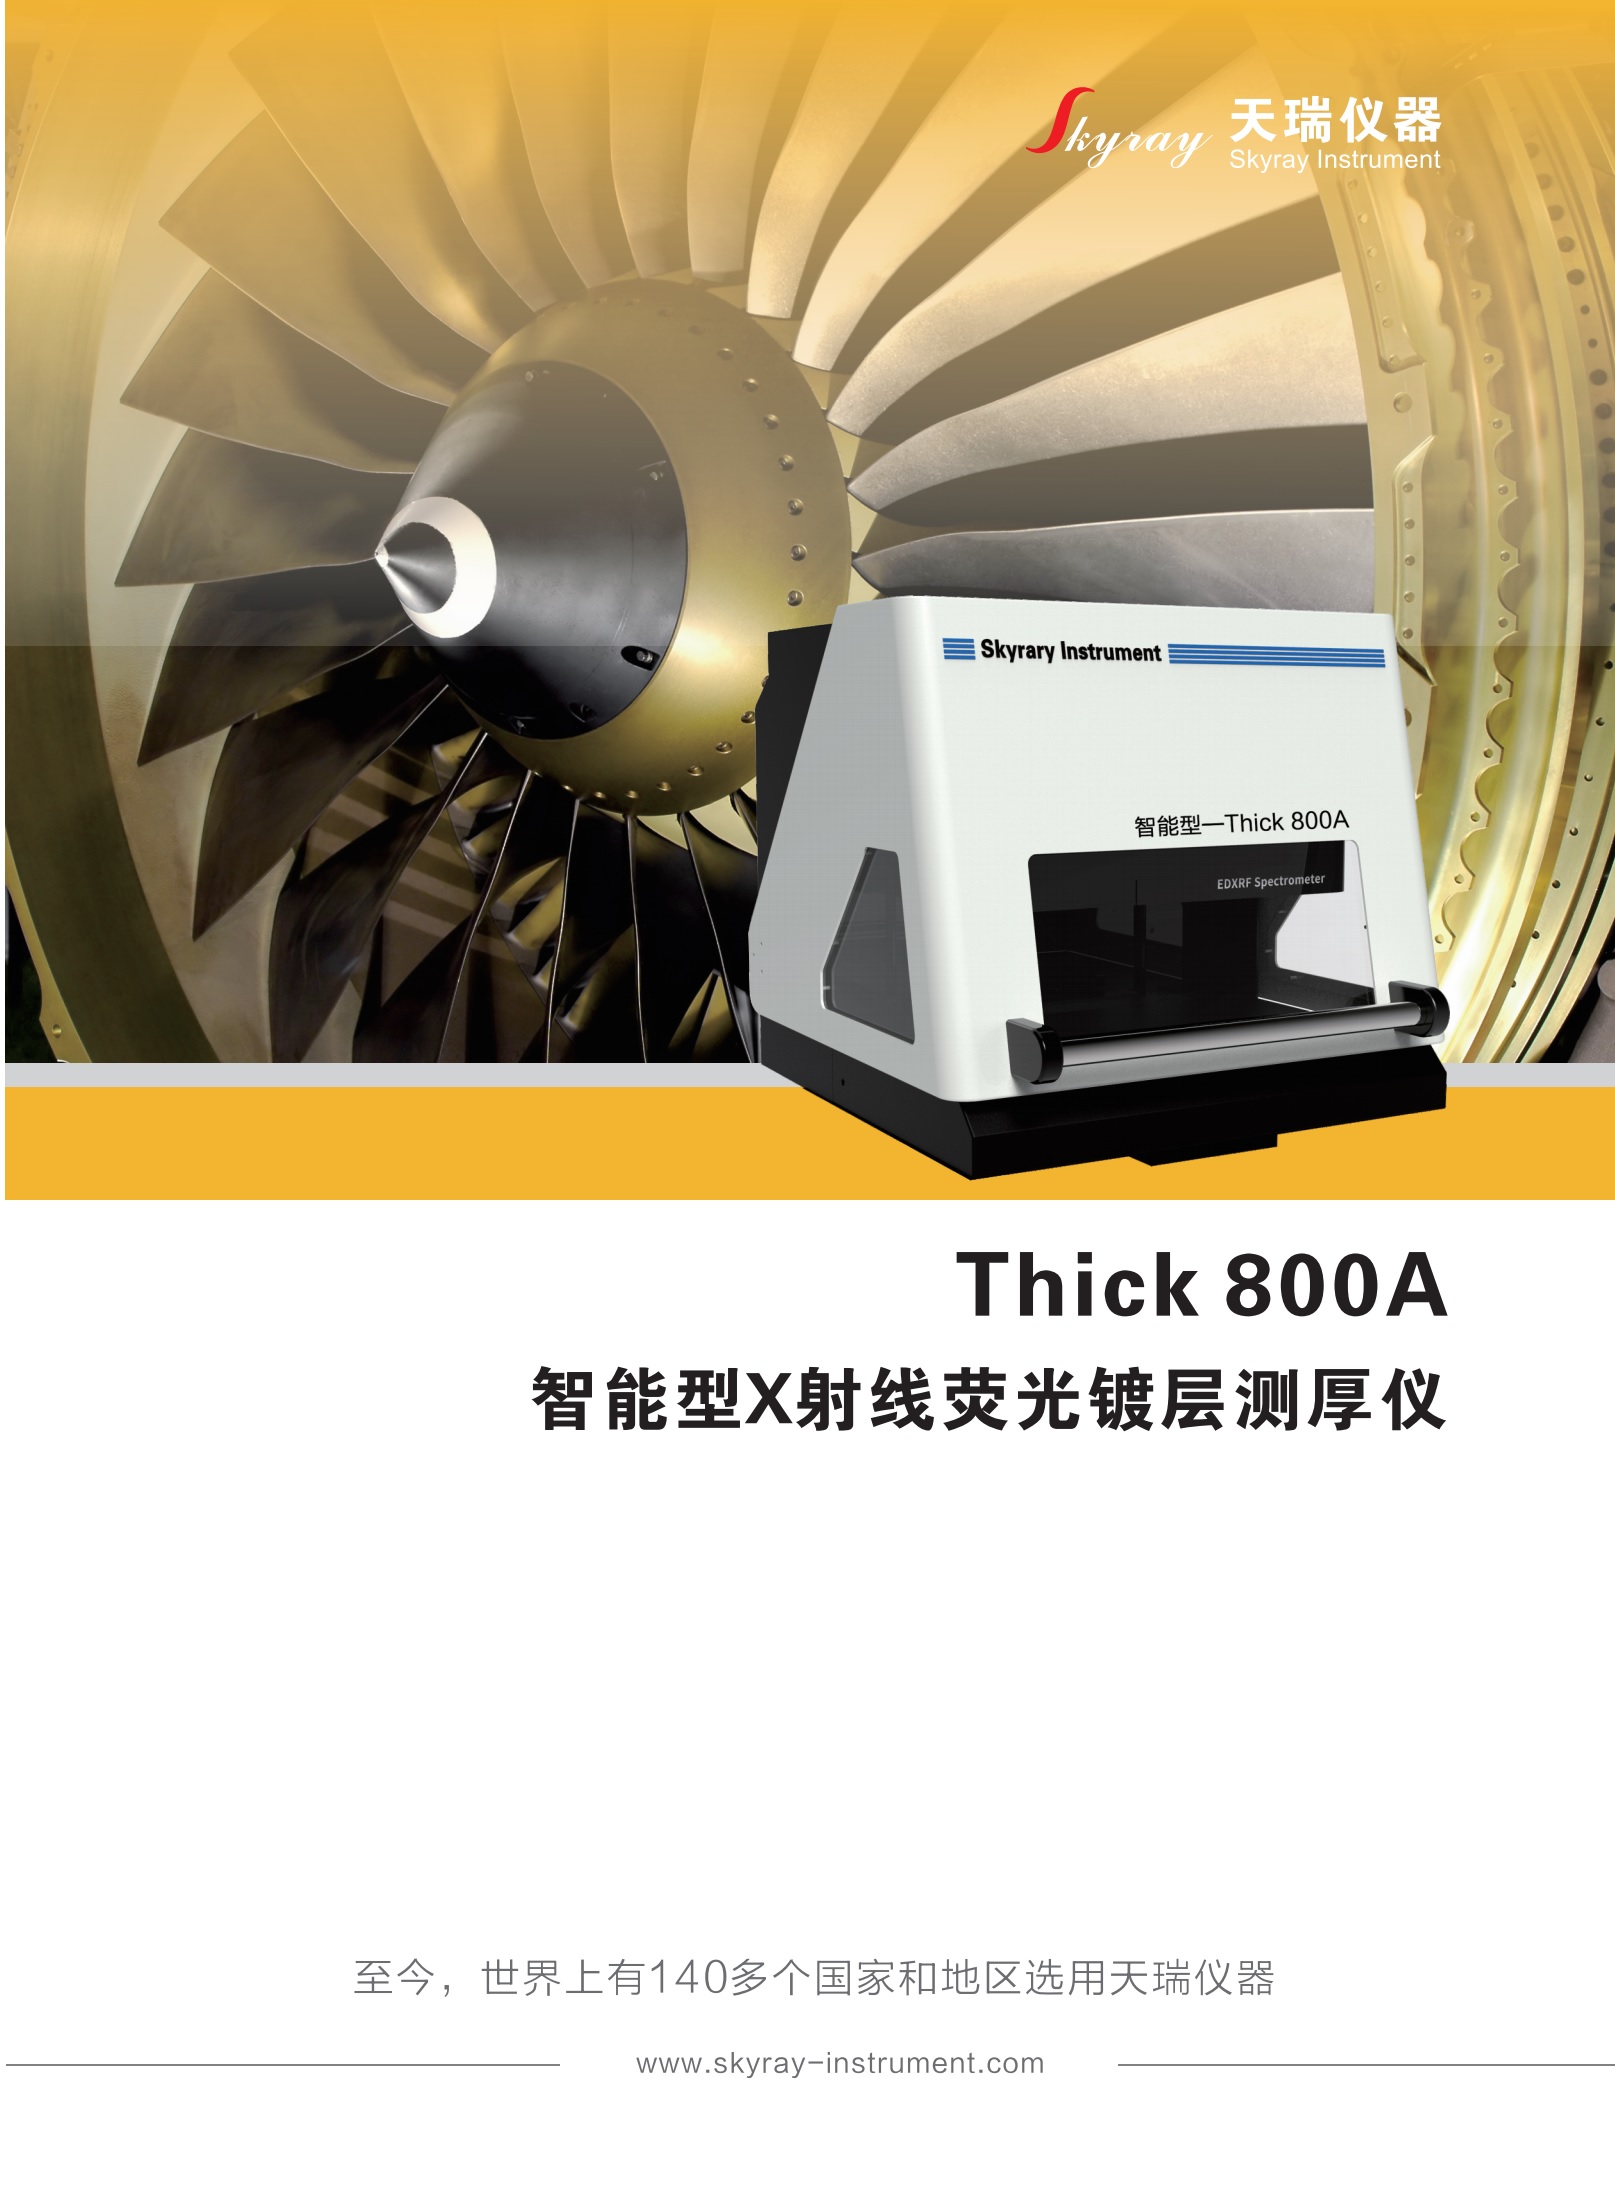 江苏天瑞仪器股份有限公司-镀层厚度测试仪THICK 800A 智能型